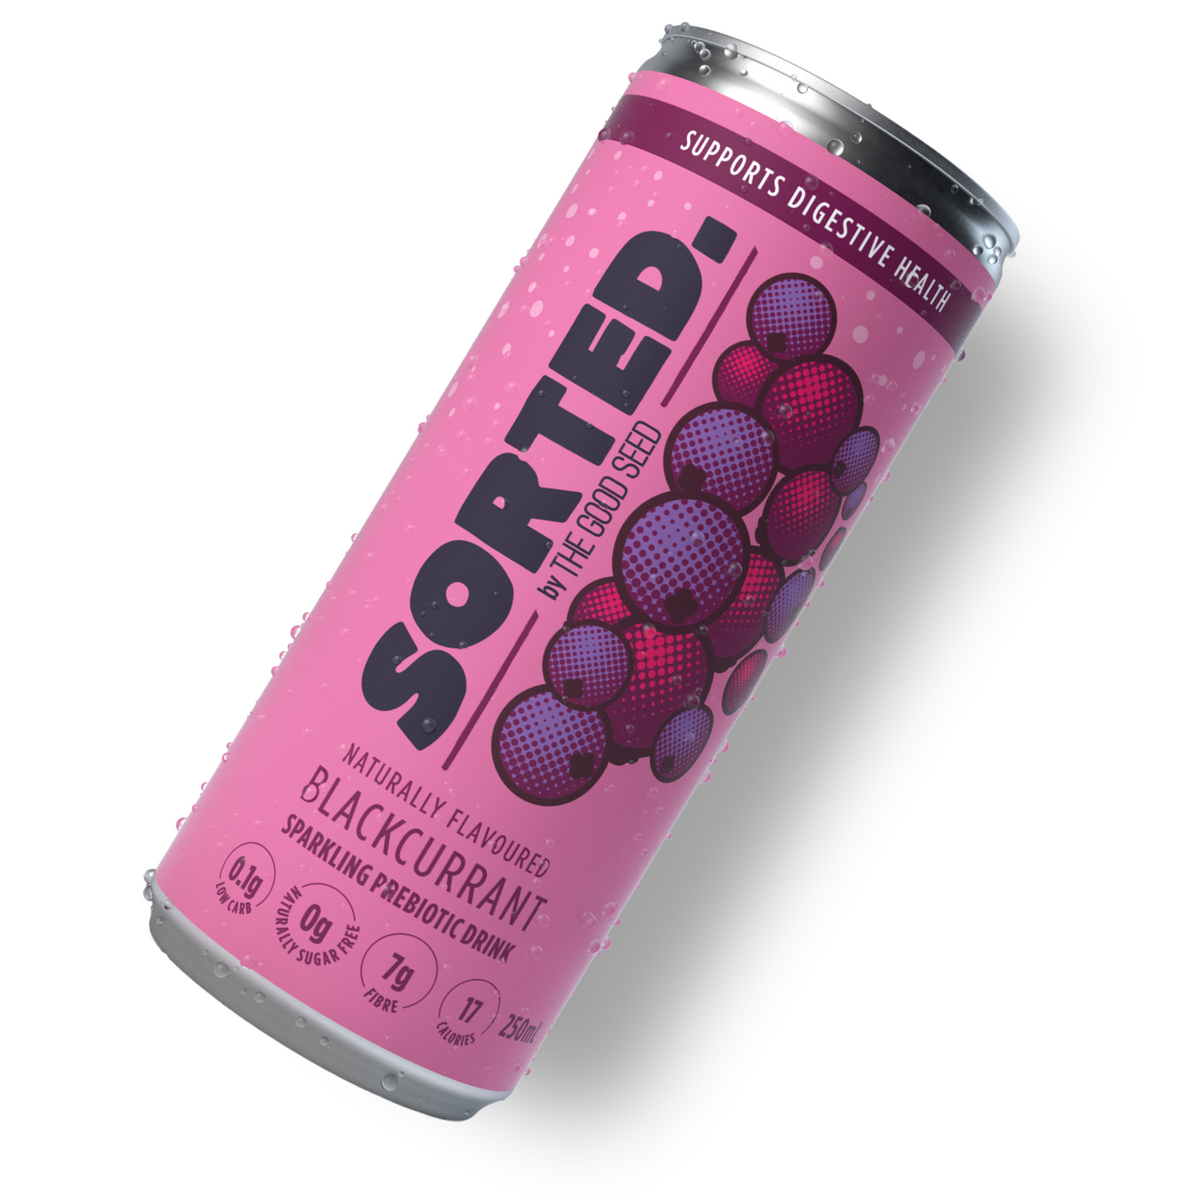 Sorted - Sparkling Prebiotic Drink